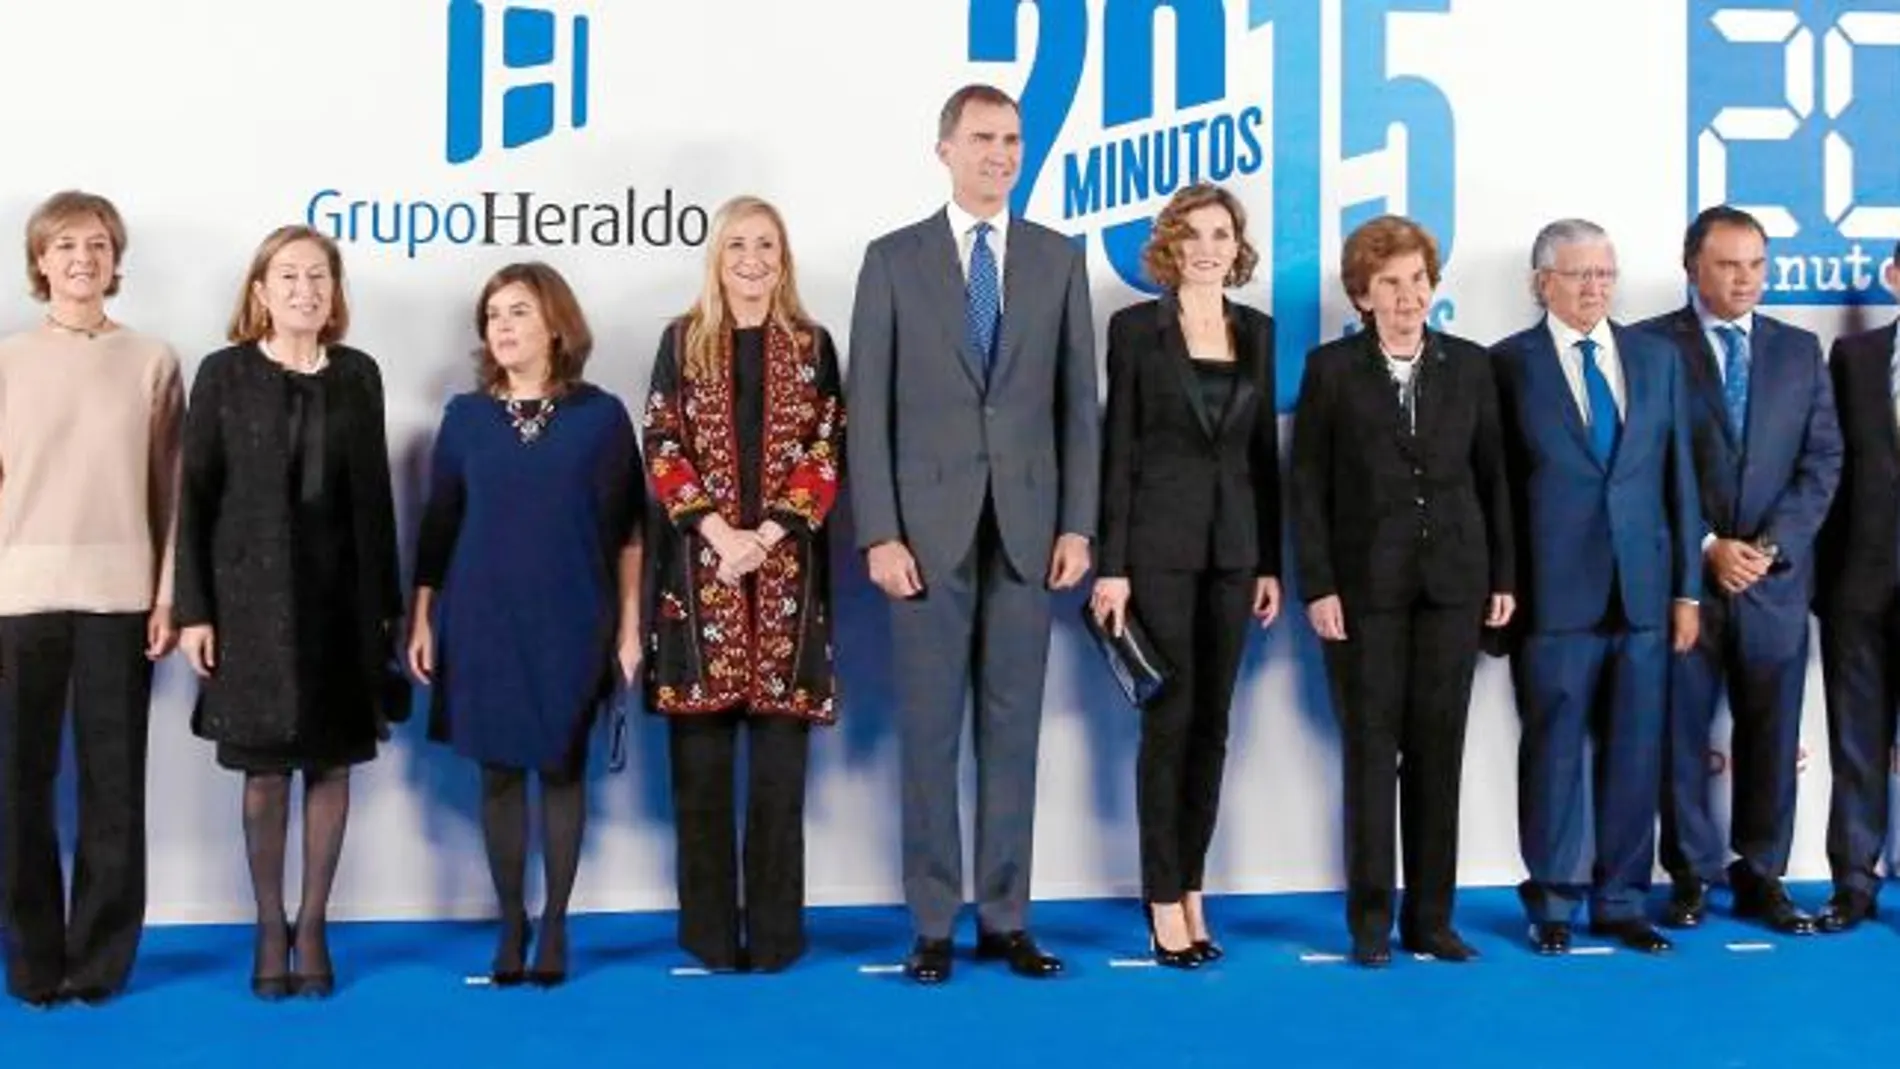 Representantes del «20 minutos» y del Grupo Heraldo junto a diferentes personalidades del Partido Popular y SS. MM. Don Felipe y Doña Letizia